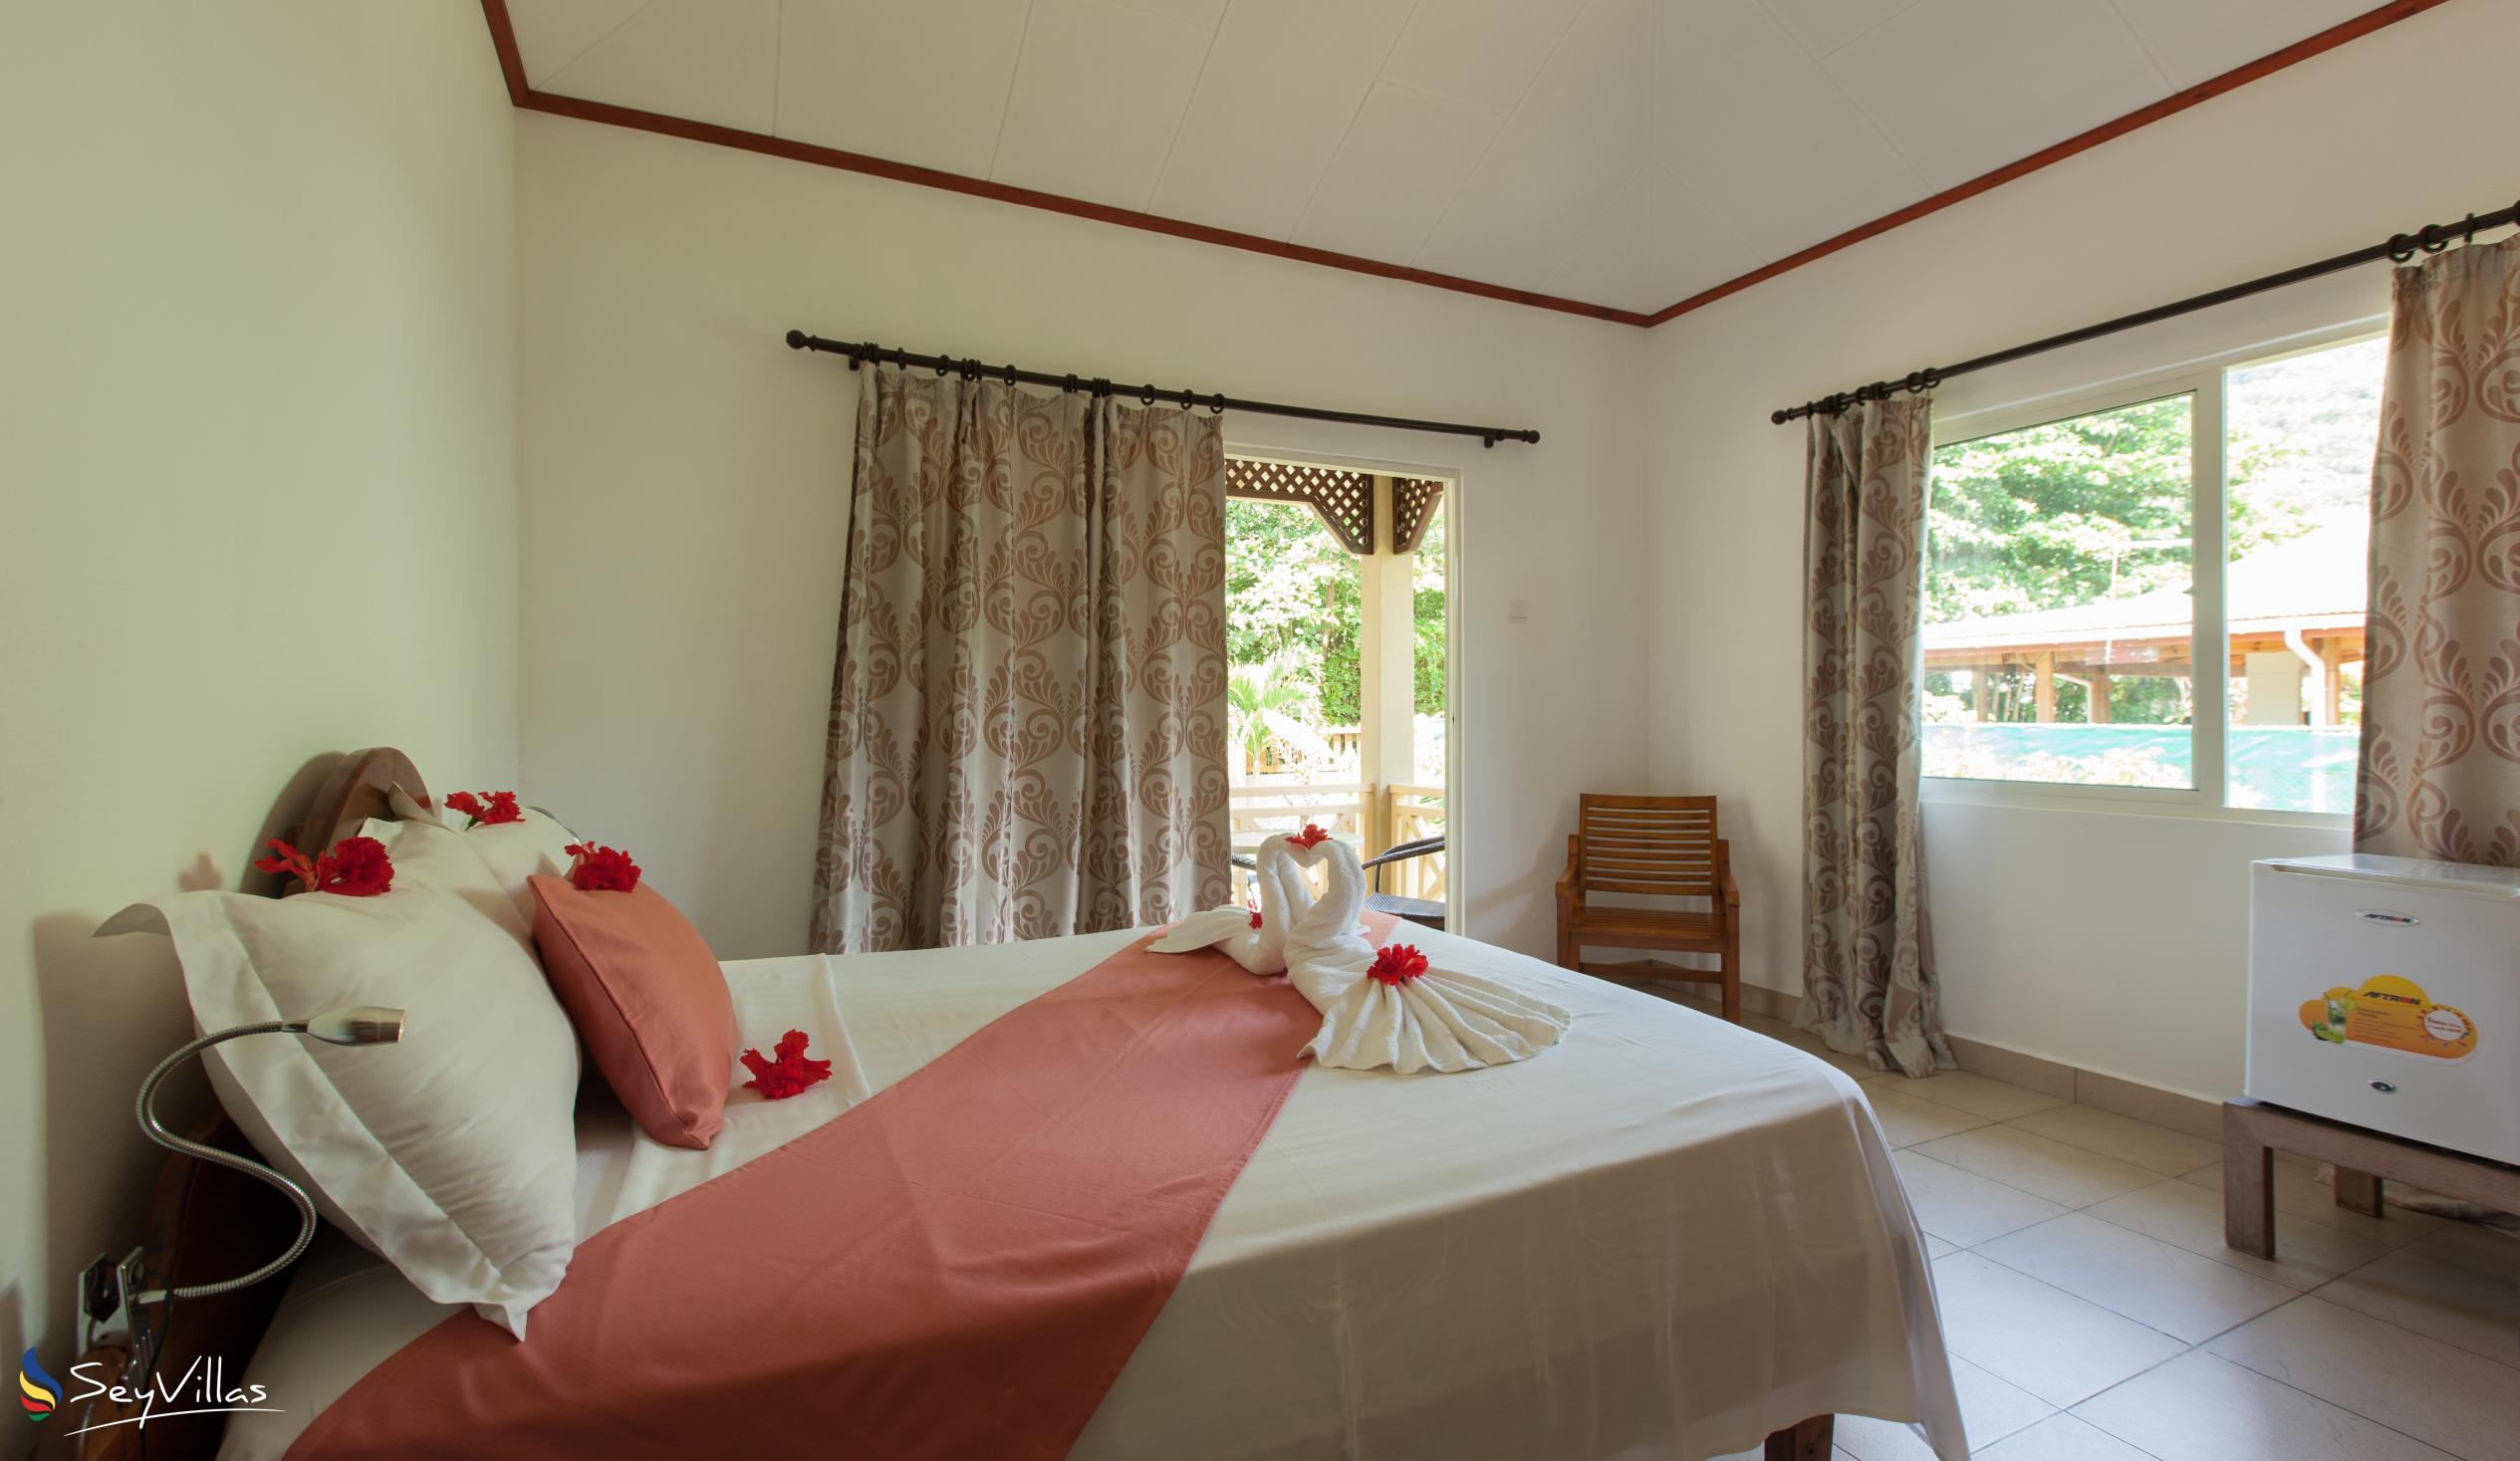 Foto 21: Hostellerie La Digue - Chalet mit 3 Schlafzimmern - La Digue (Seychellen)